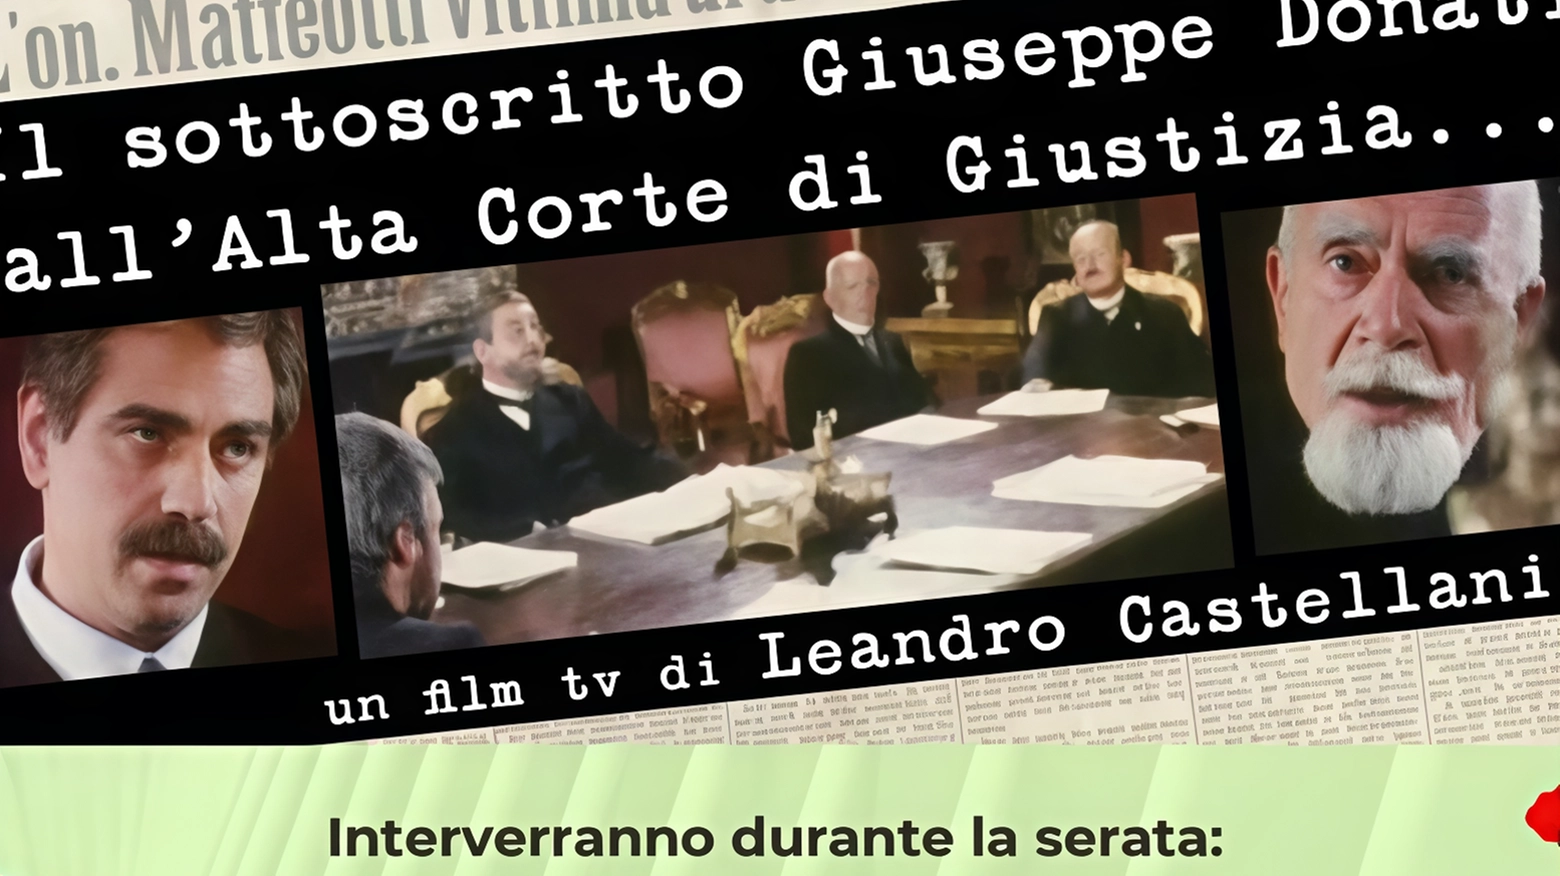 Evento a Granarolo Faentino per commemorare Giuseppe Donati, antifascista cattolico, con proiezione del film-documentario sulla sua vita e contributo alla lotta per la libertà durante la Liberazione.